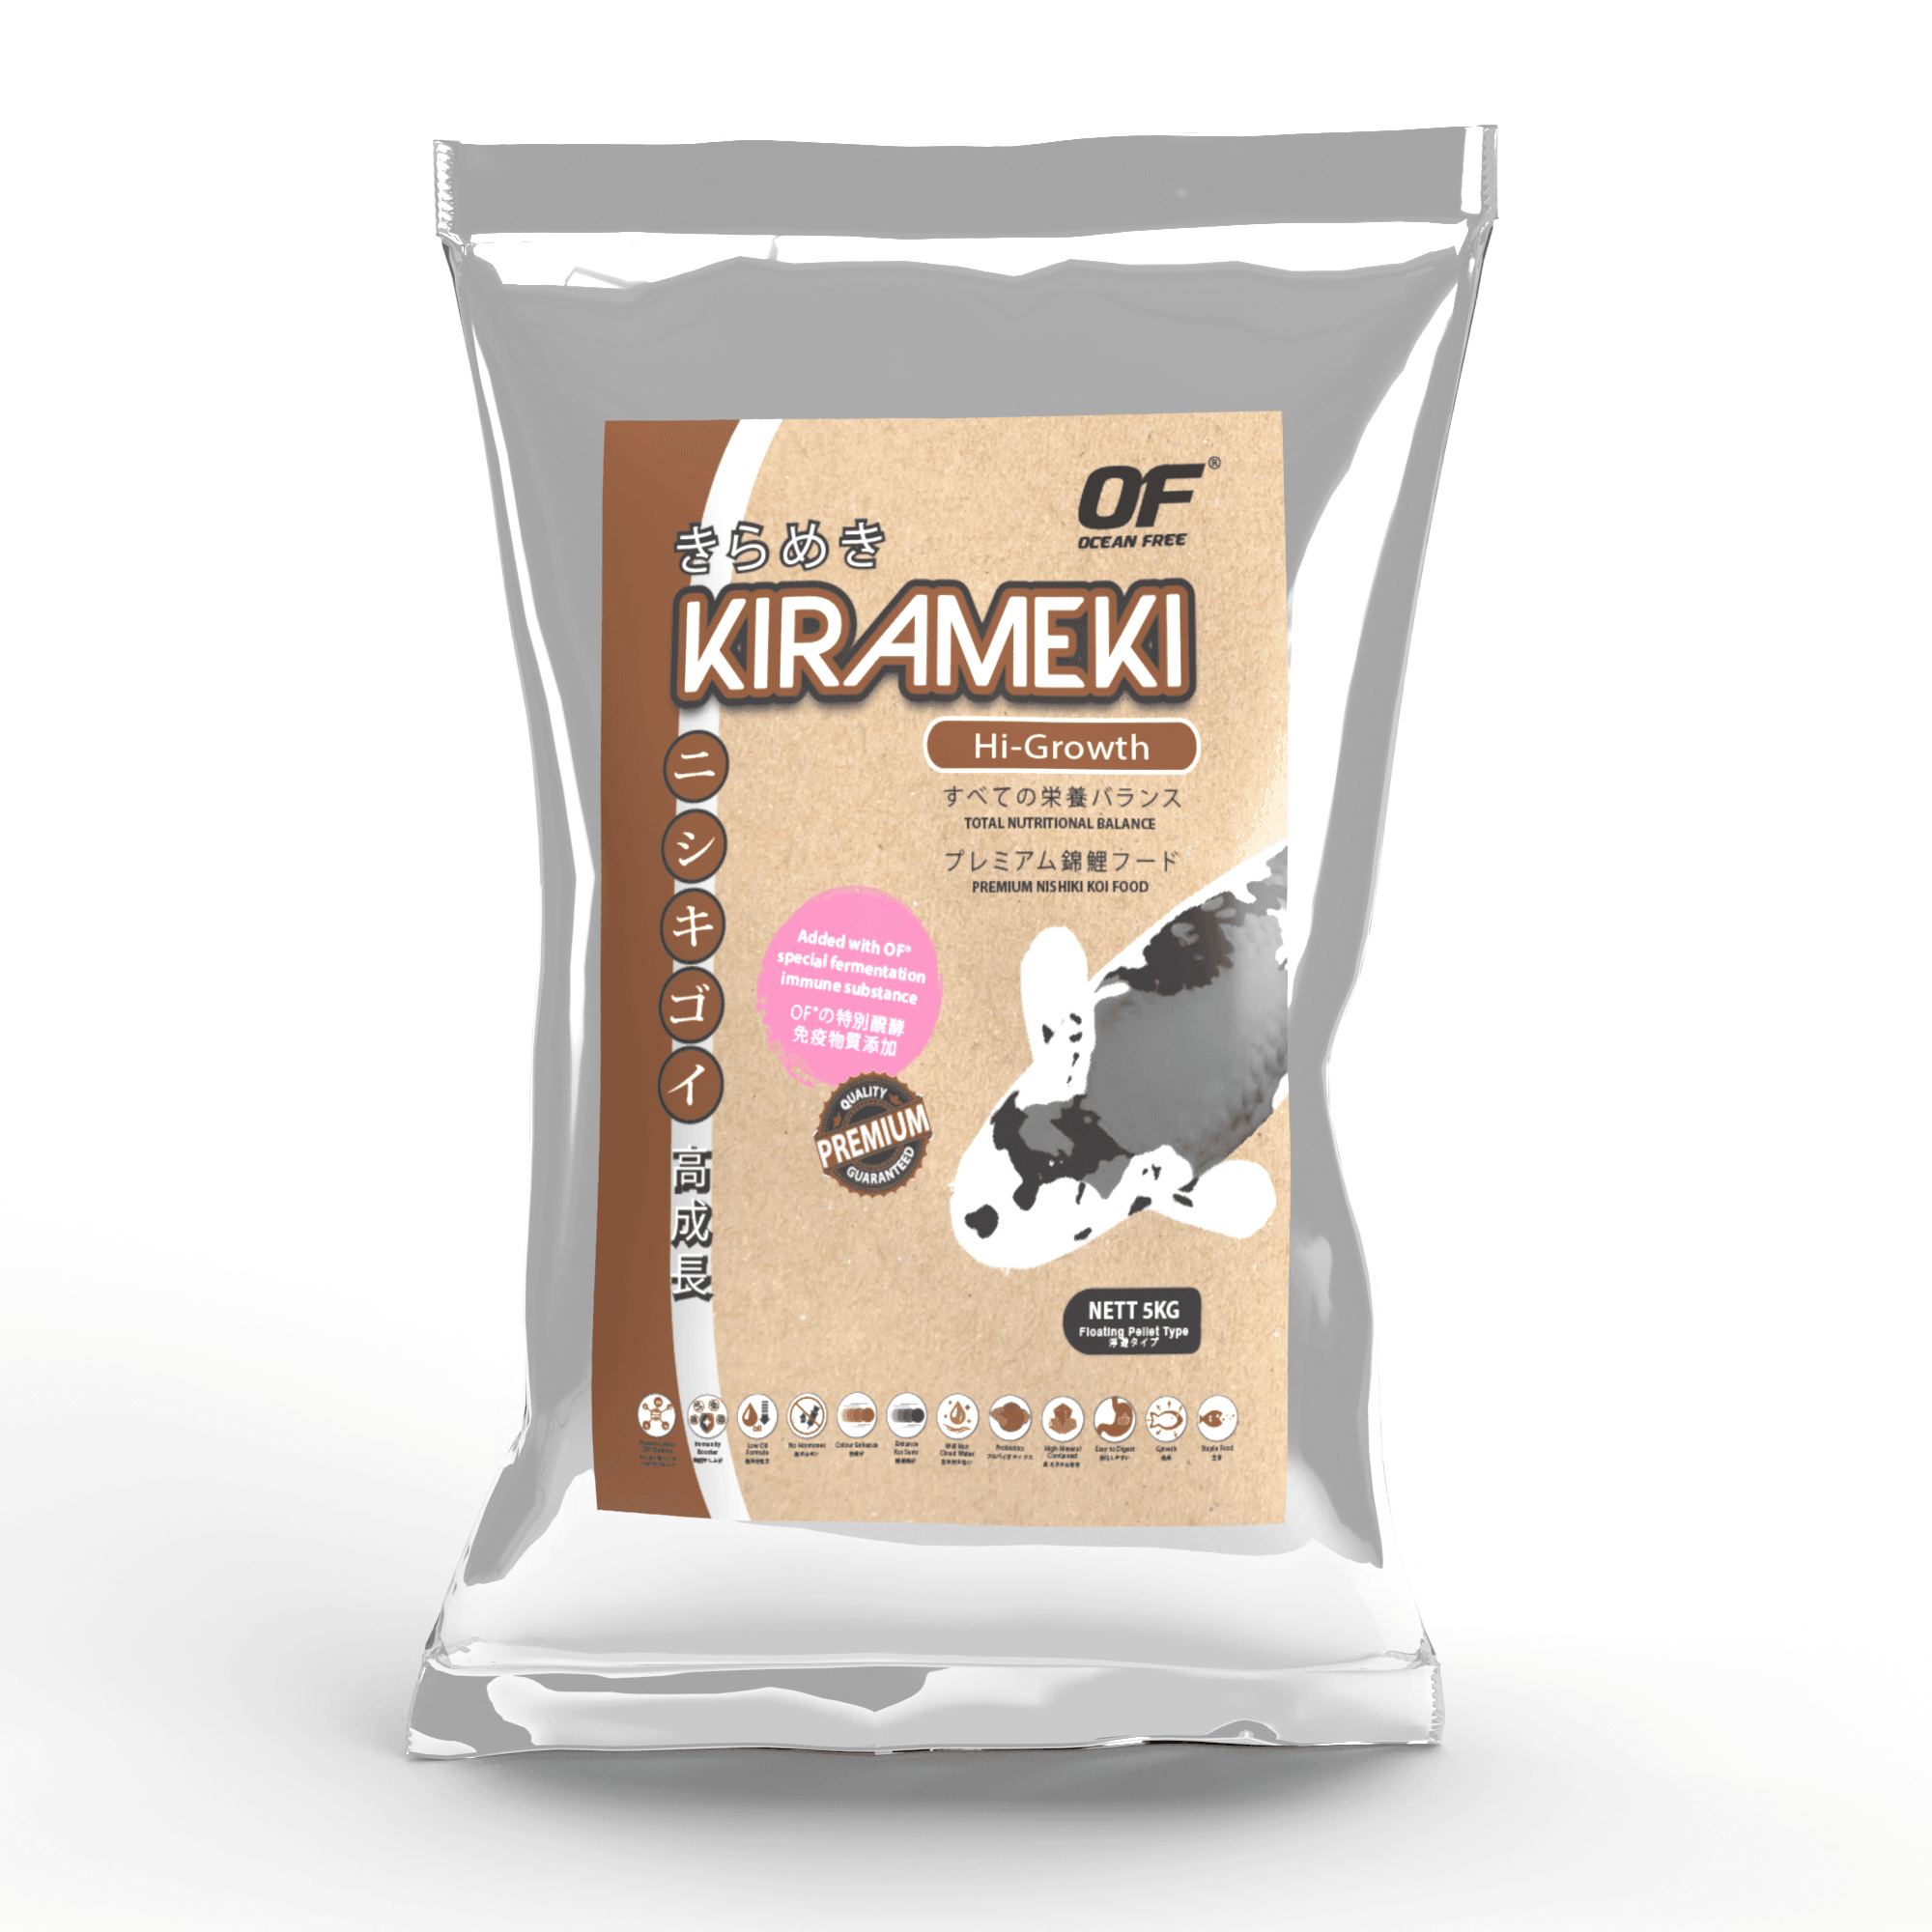 Ocean Free Kirameki Hi Growth Super Premium Goldfish Koi Food 5kg - Amazing Amazon